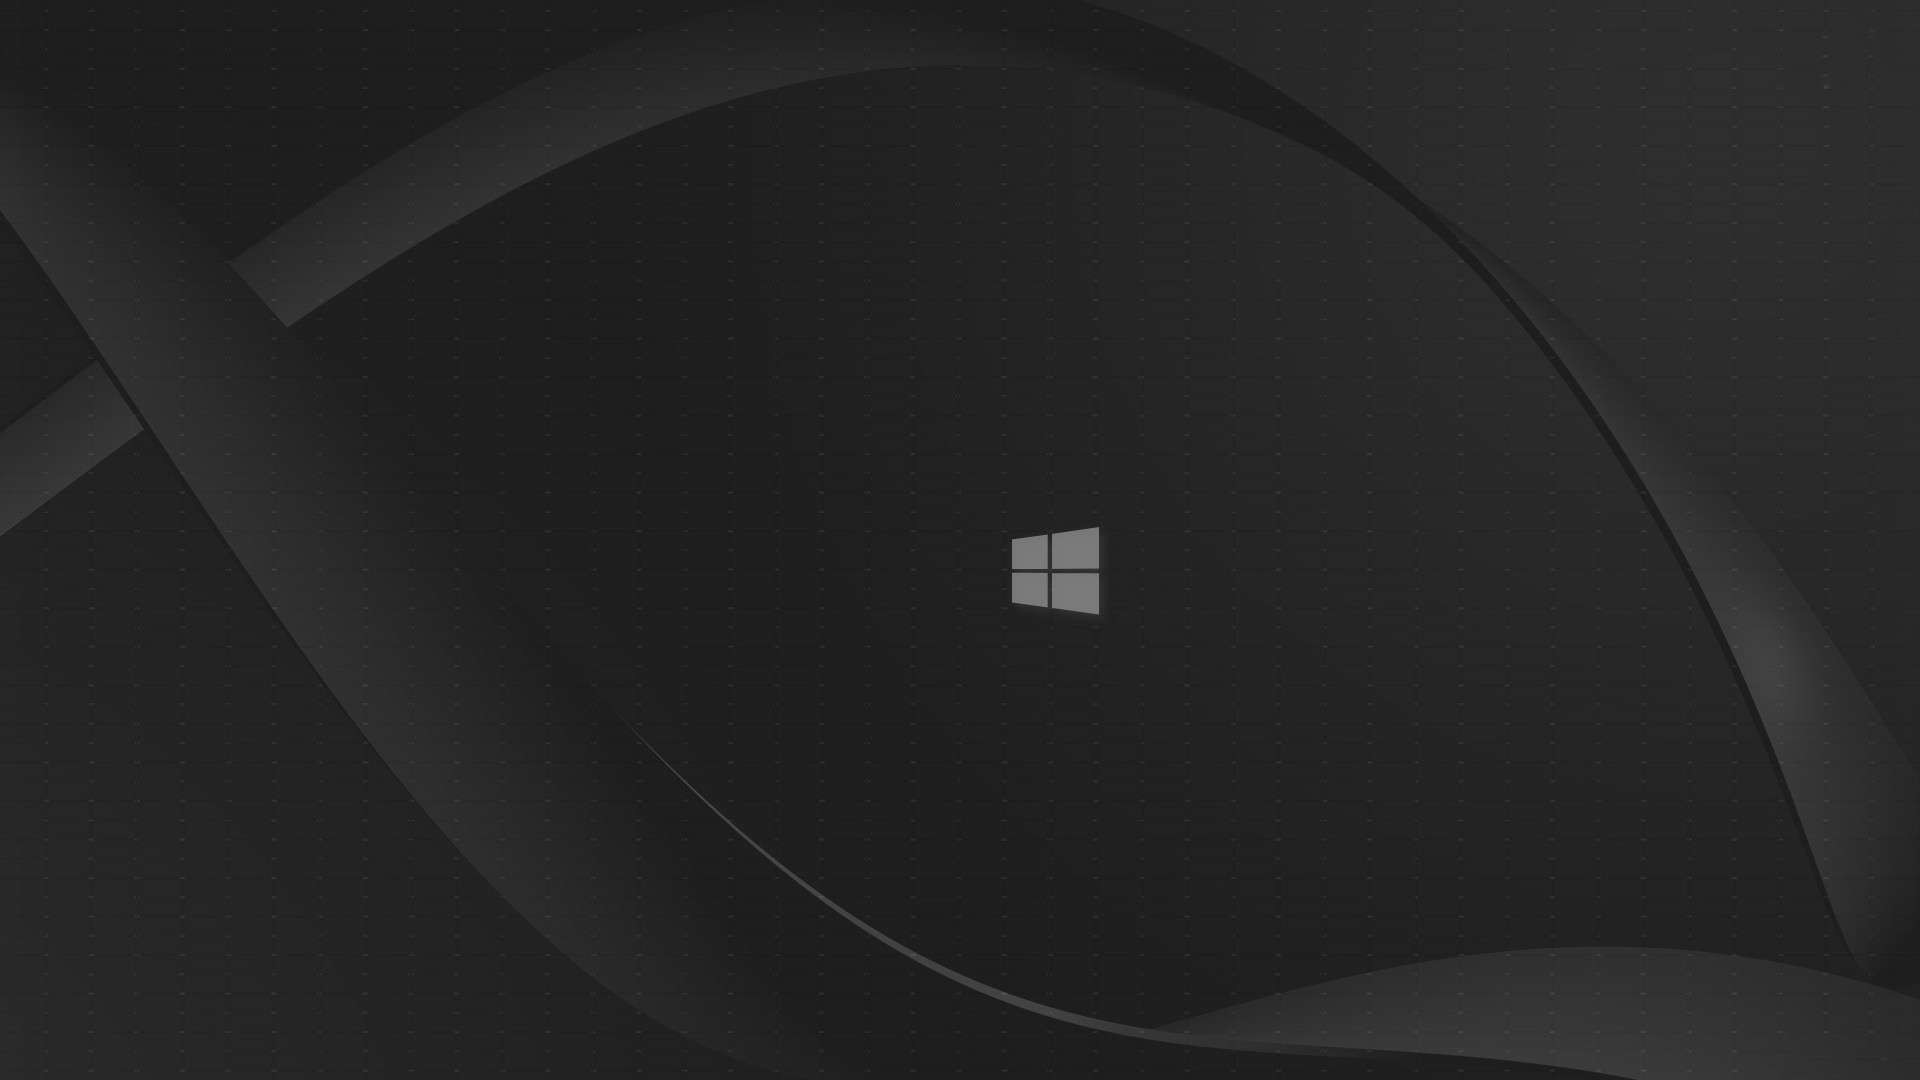 1920x1080 Wallpaper: Windows 10 Black Wallpaper HD 1080p. Upload at January 7 .